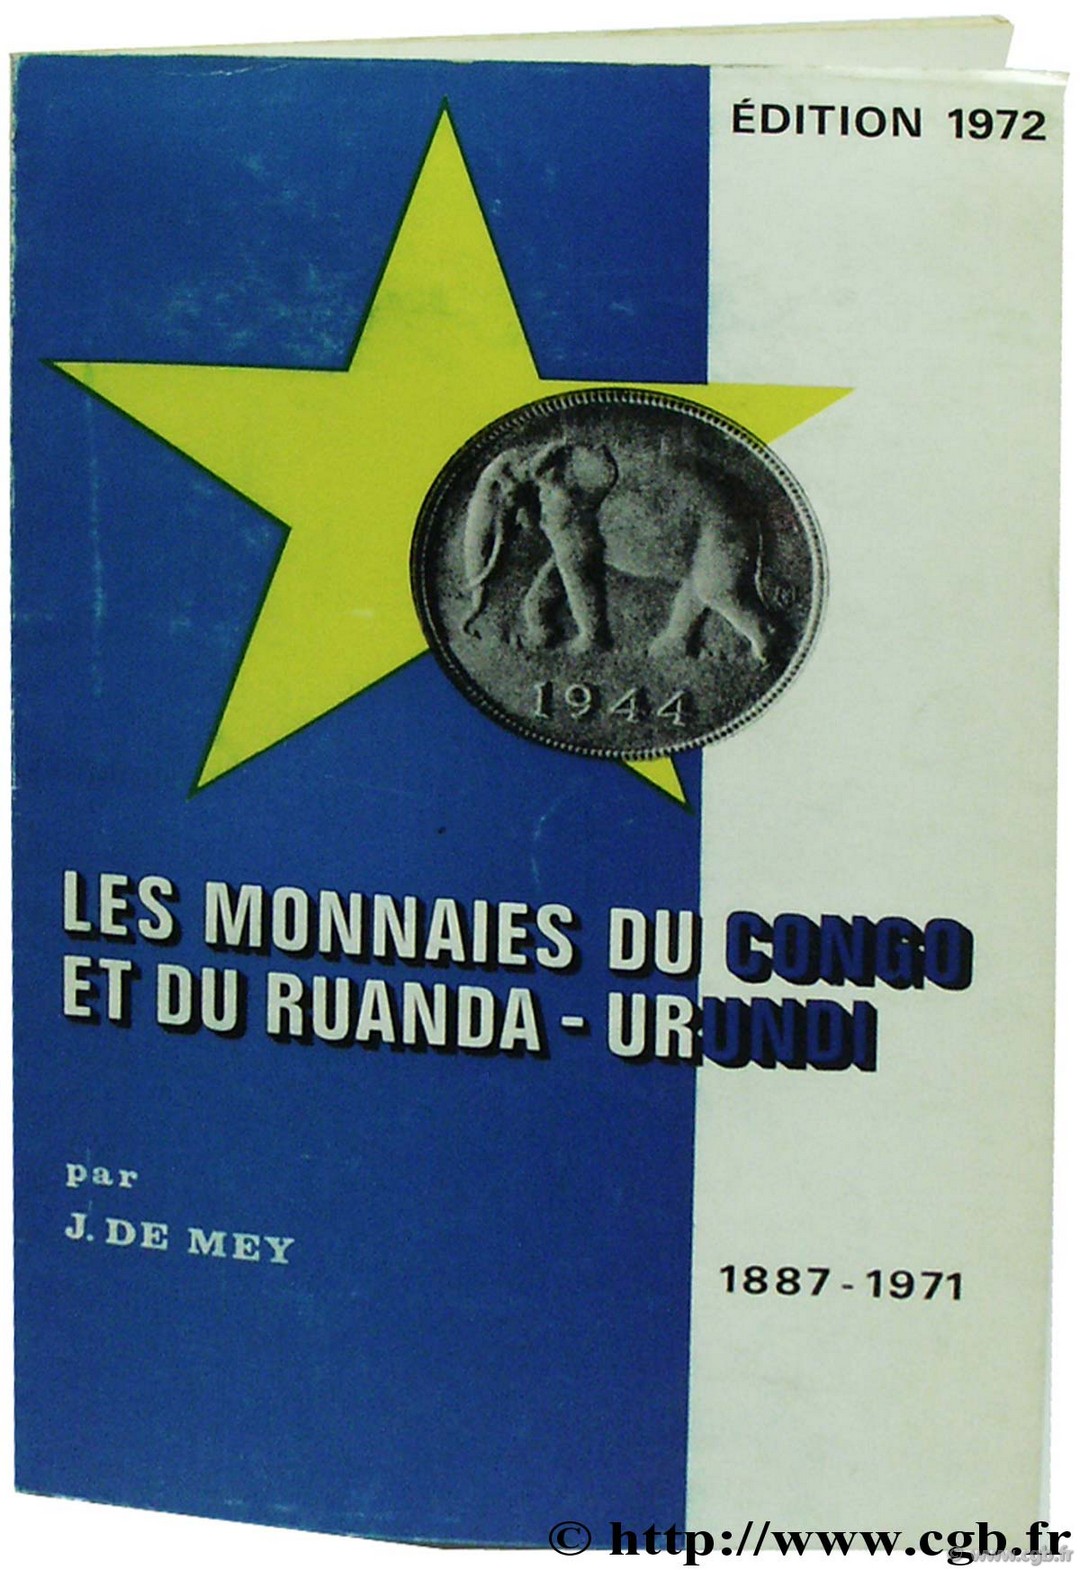 Les monnaies du Congo et du Ruanda - Urundi 1887-1971 DE MEY J. 